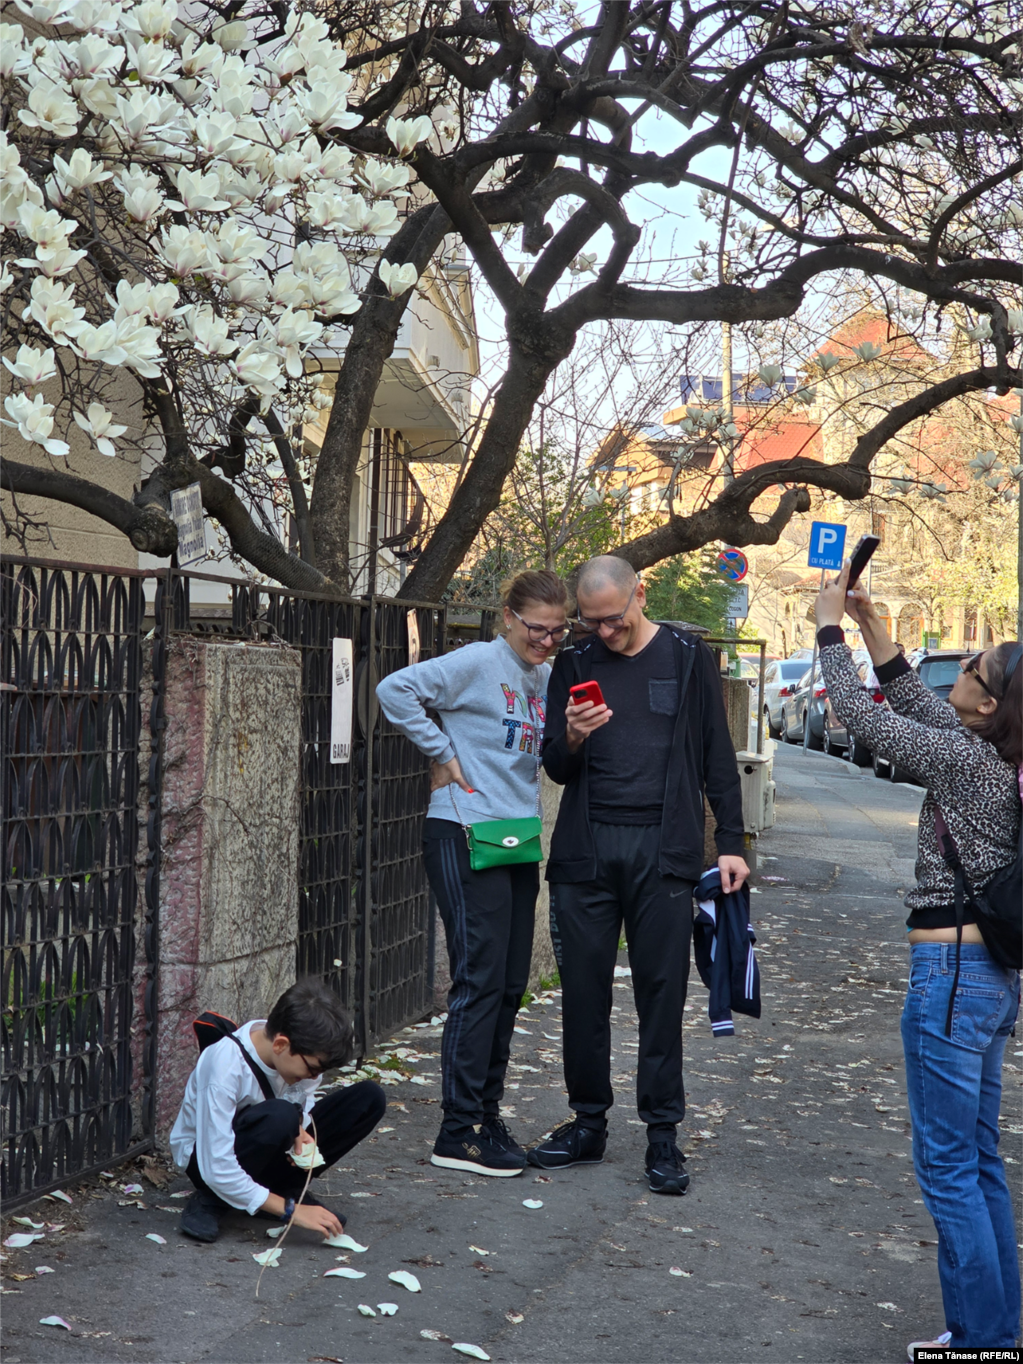 Băiețelul se joacă cu petalele de magnolii de pe trotuar. Nimeni nu își permite să rupă &bdquo;o amintire&rdquo; din arborele de magnolie.&nbsp;